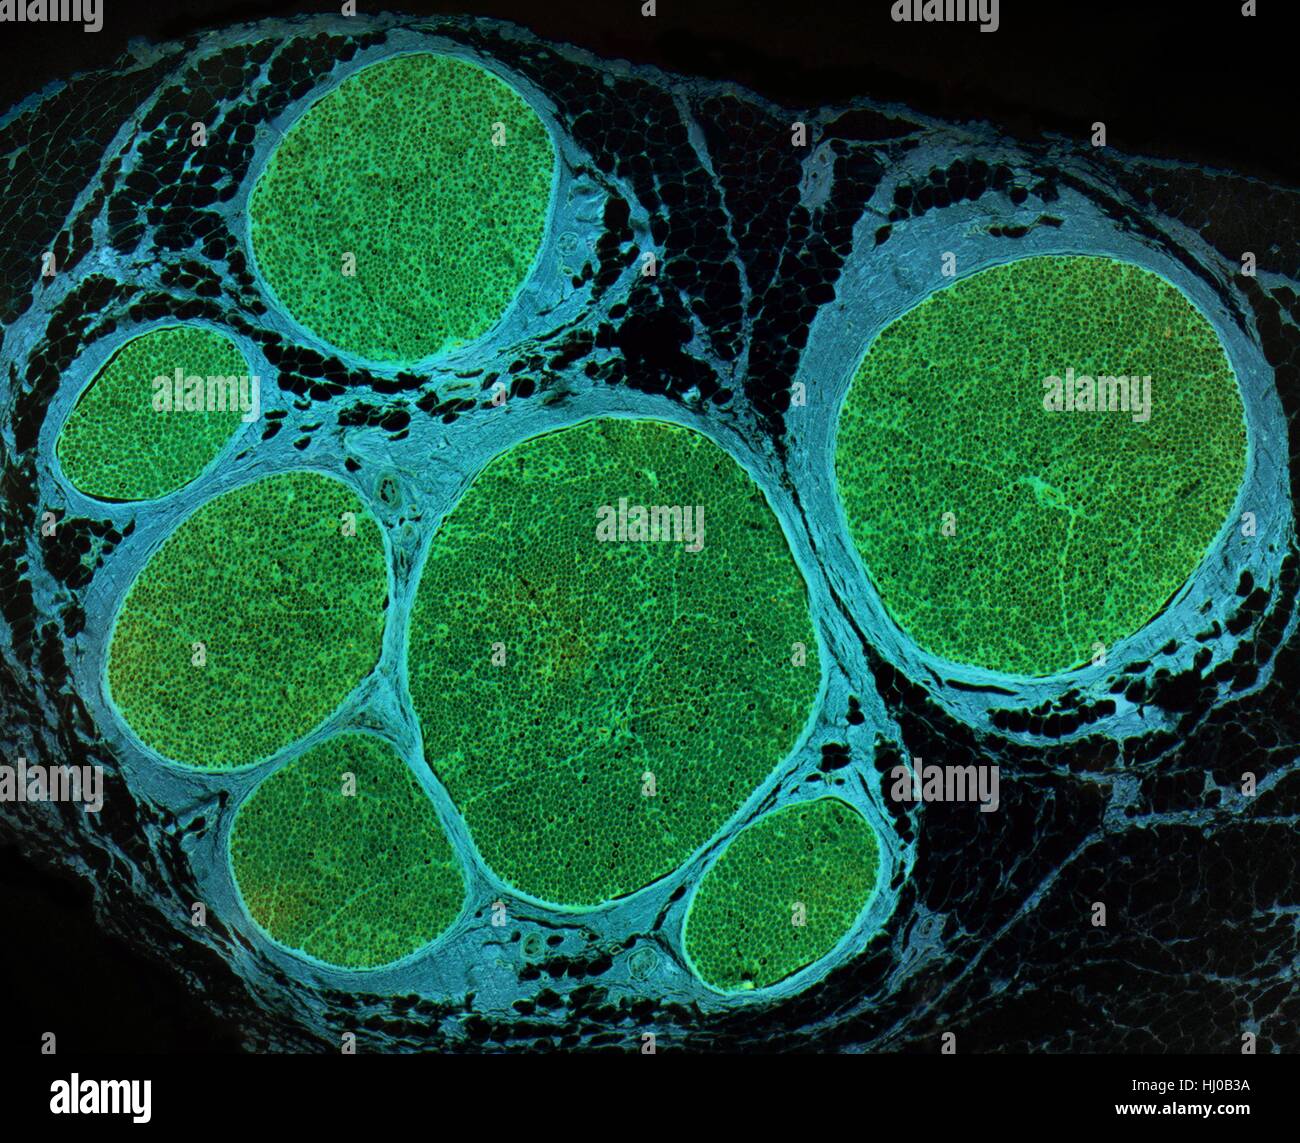 Nervenfasern. Leichte Schliffbild (LM) des einen Querschnitt durch ein Bündel (Faszikel) von Nervenfasern. Innerhalb jedes Faszikel sind viele Markhaltige Nervenfasern. Myelin (grün) ist eine isolierende Fettschicht, die einzelnen Nervenfasern genannt Axone, die Erhöhung der Geschwindigkeit bei der Nervenimpulse Reisen umgibt. Die Fasern innerhalb jedes Faszikel zu unterstützen, ist das Endoneurium, die eine Form des Bindegewebes. Das Perineurium umgibt jeden Faszikel, die sind wiederum durch epineurial Bindegewebe (Cyan) gebunden. Vergrößerung: X80 beim Drucken 10 cm breit. Stockfoto